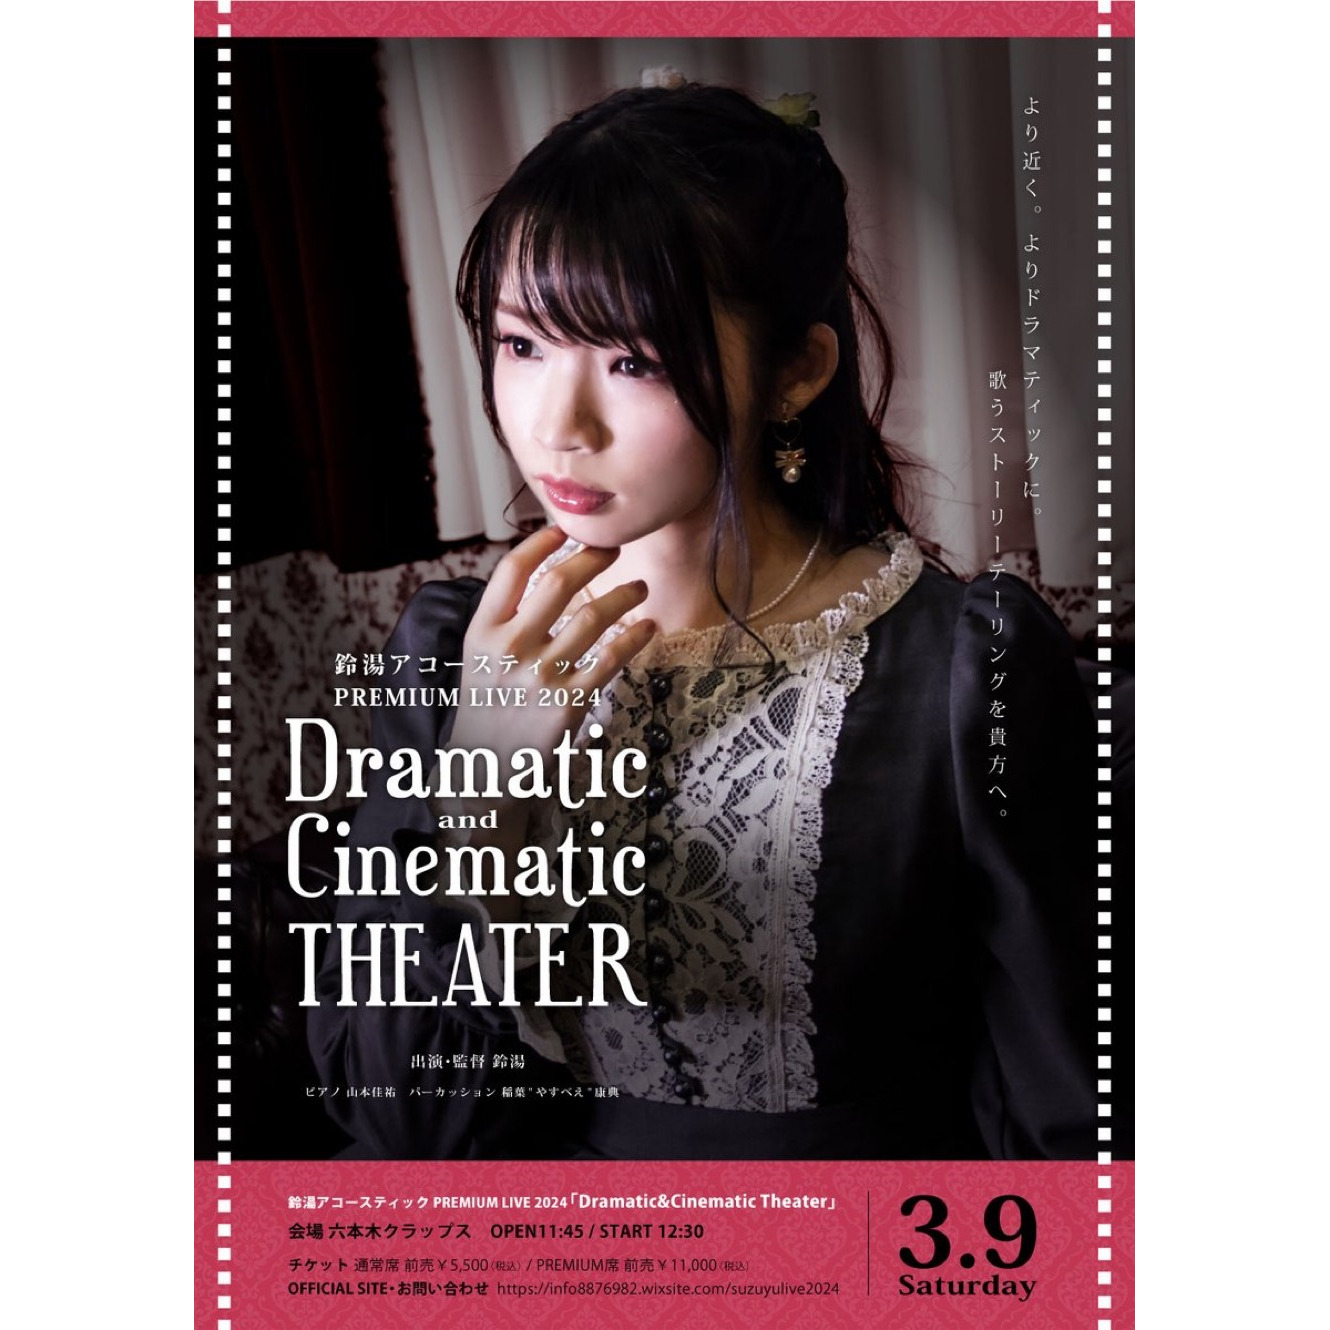 鈴湯 アコースティック PREMIUM LIVE 2024 「Dramatic&Cinematic Theater」《同時配信あり》